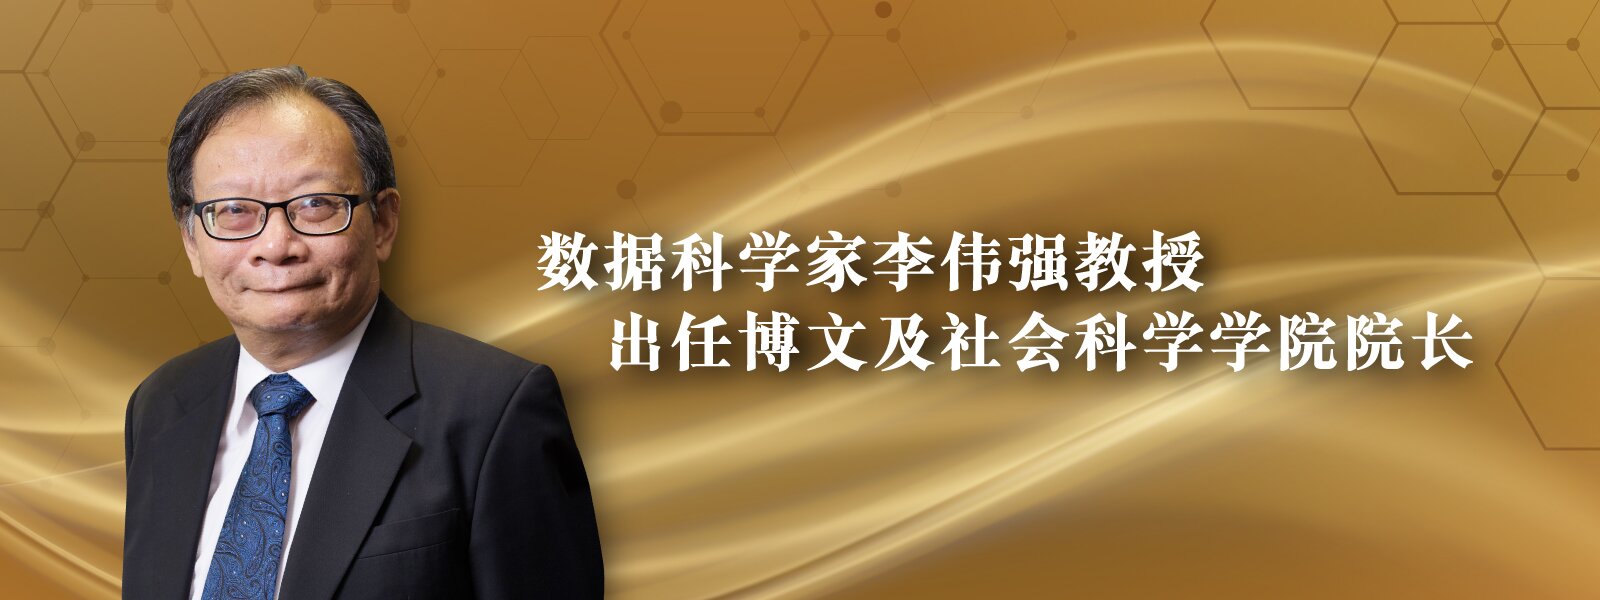 数据科学家李伟强教授出任博文及社会科学学院院长